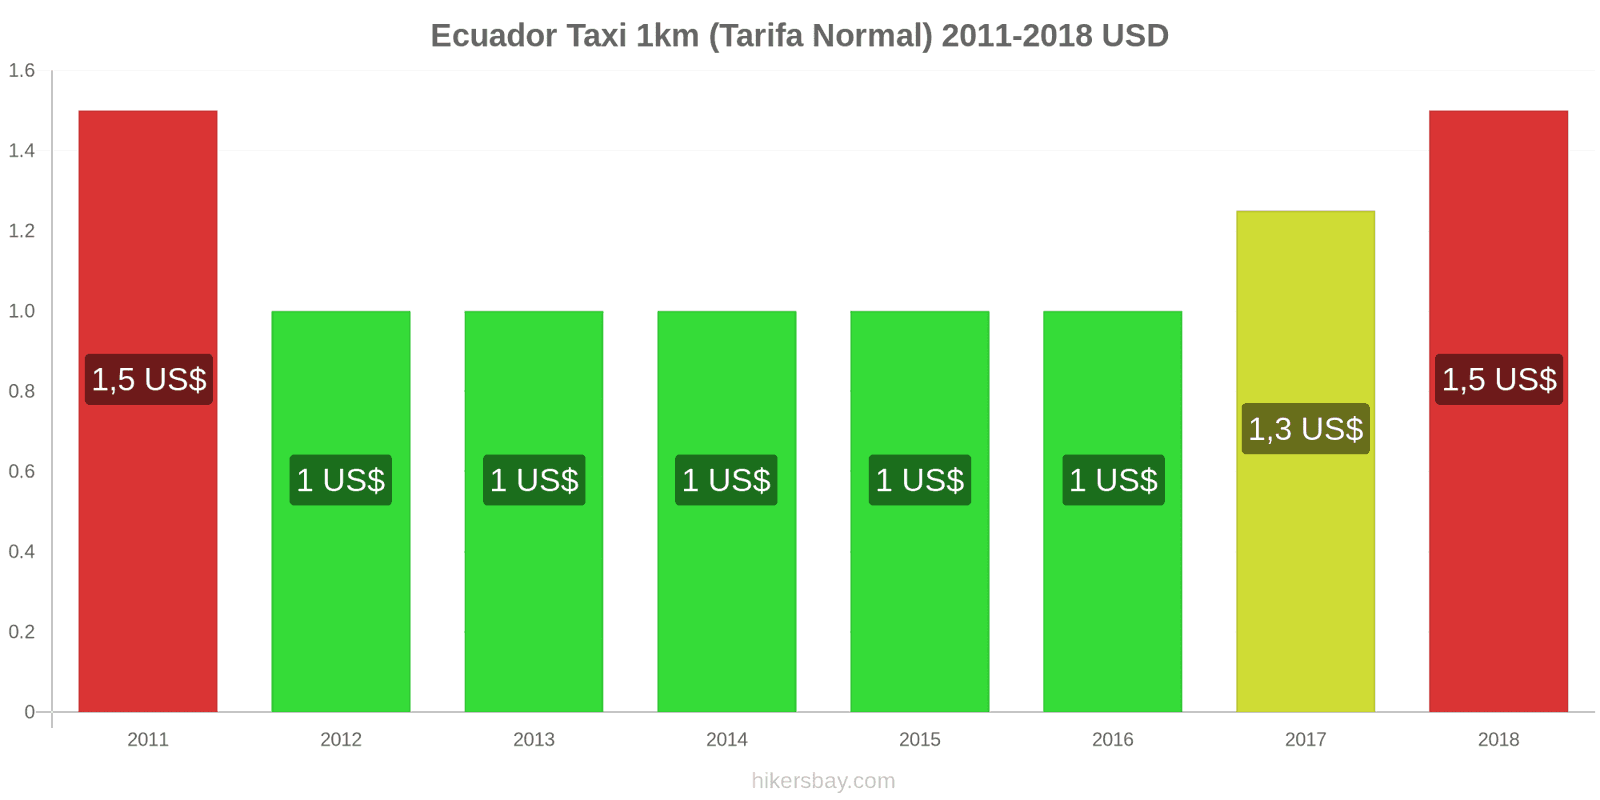 Ecuador cambios de precios Taxi 1km (tarifa normal) hikersbay.com